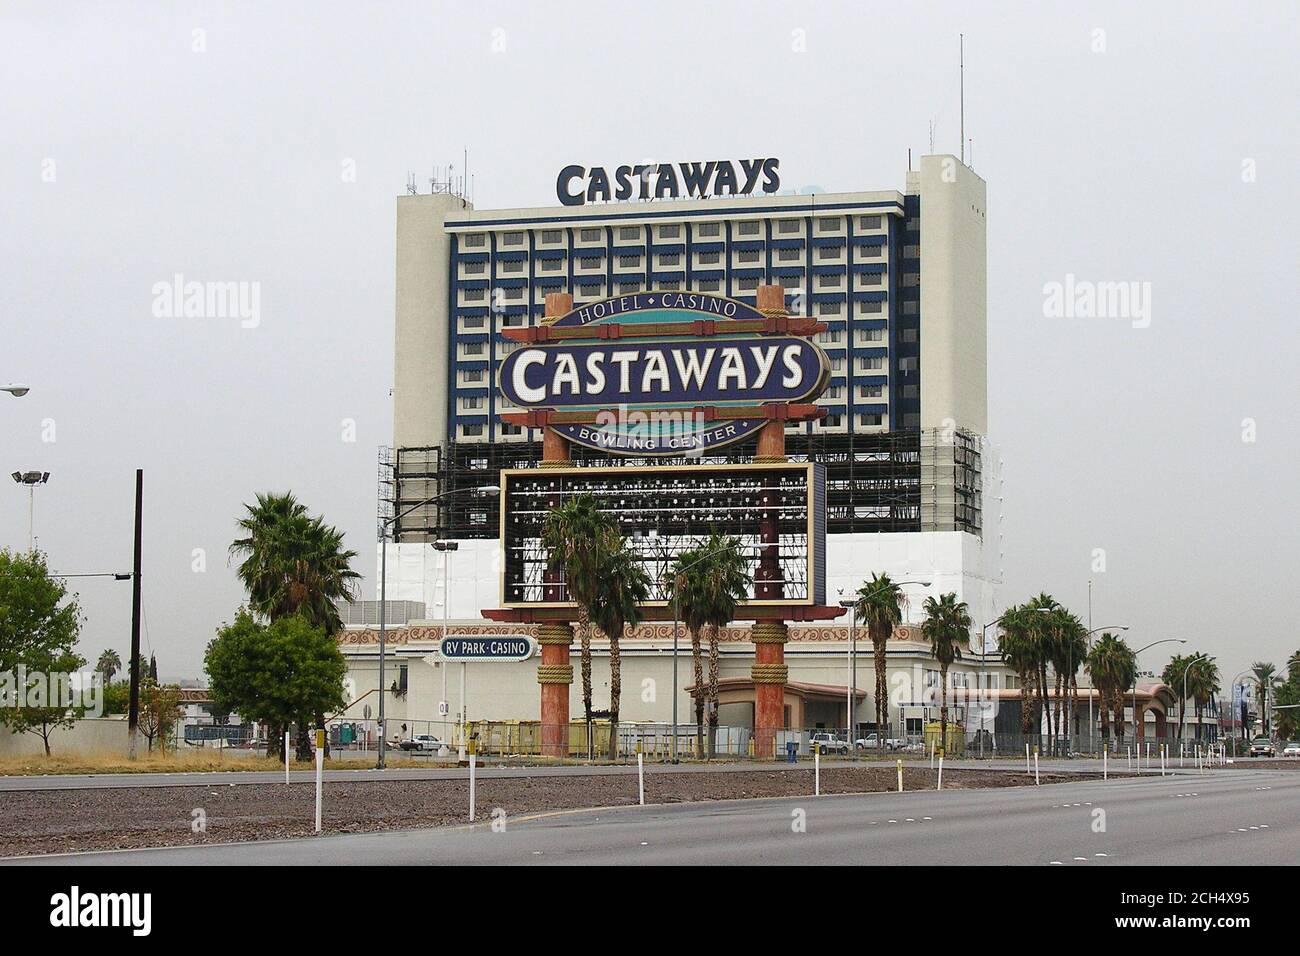 Las Vegas, Nevada, États-Unis - octobre 2005 : vue d'archives de l'hôtel Castaways, du casino et du panneau pendant la démolition. Le bâtiment était situé au 2800 Fremont Street. Banque D'Images